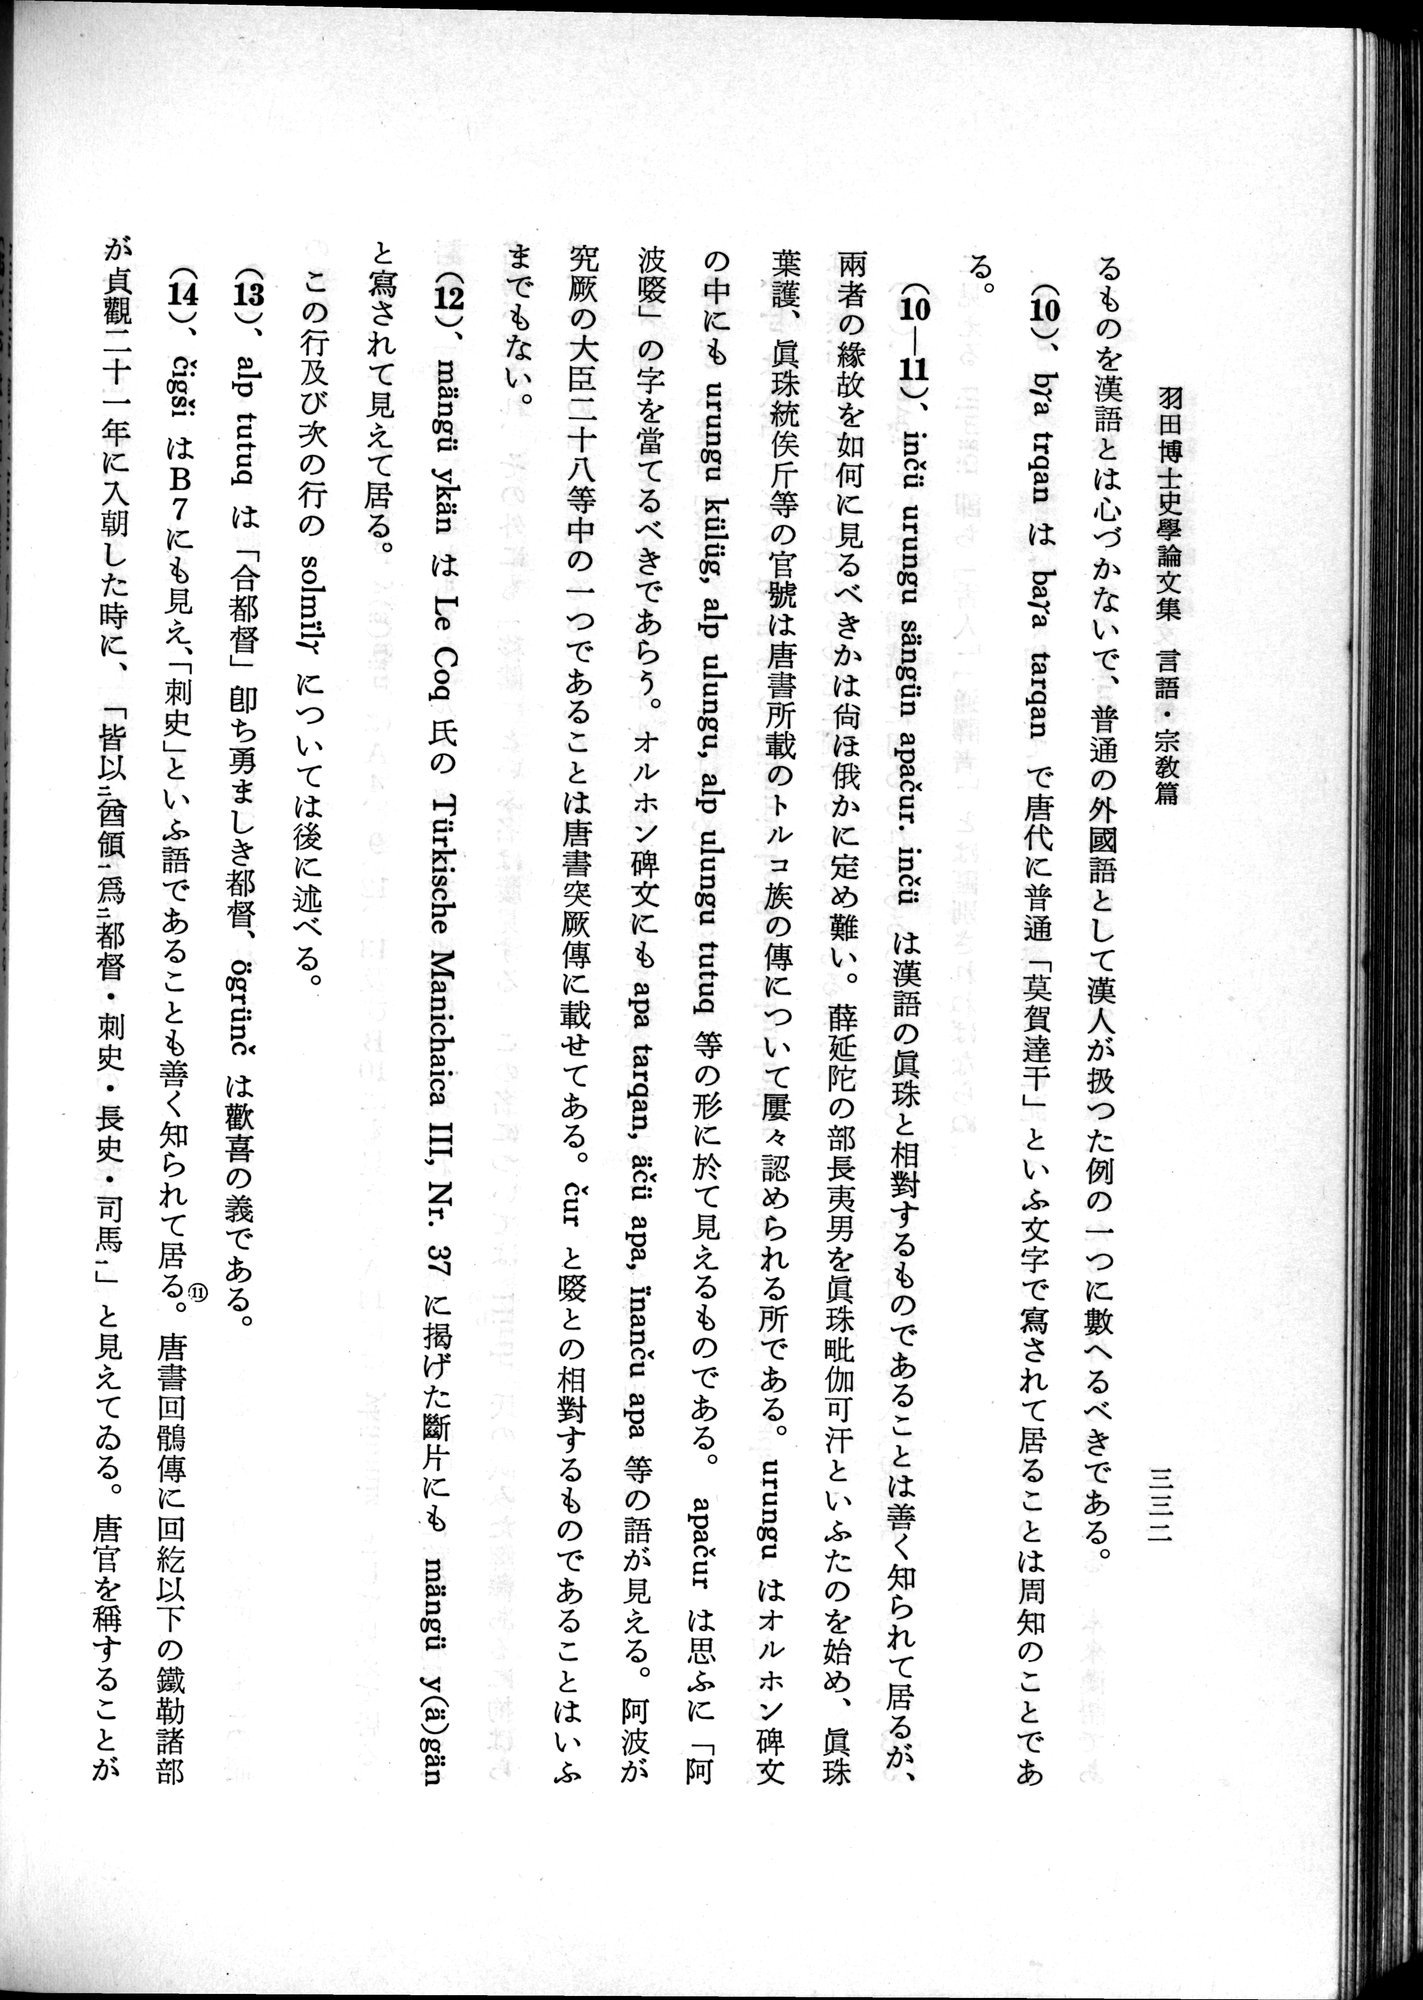 羽田博士史学論文集 : vol.2 / 394 ページ（白黒高解像度画像）